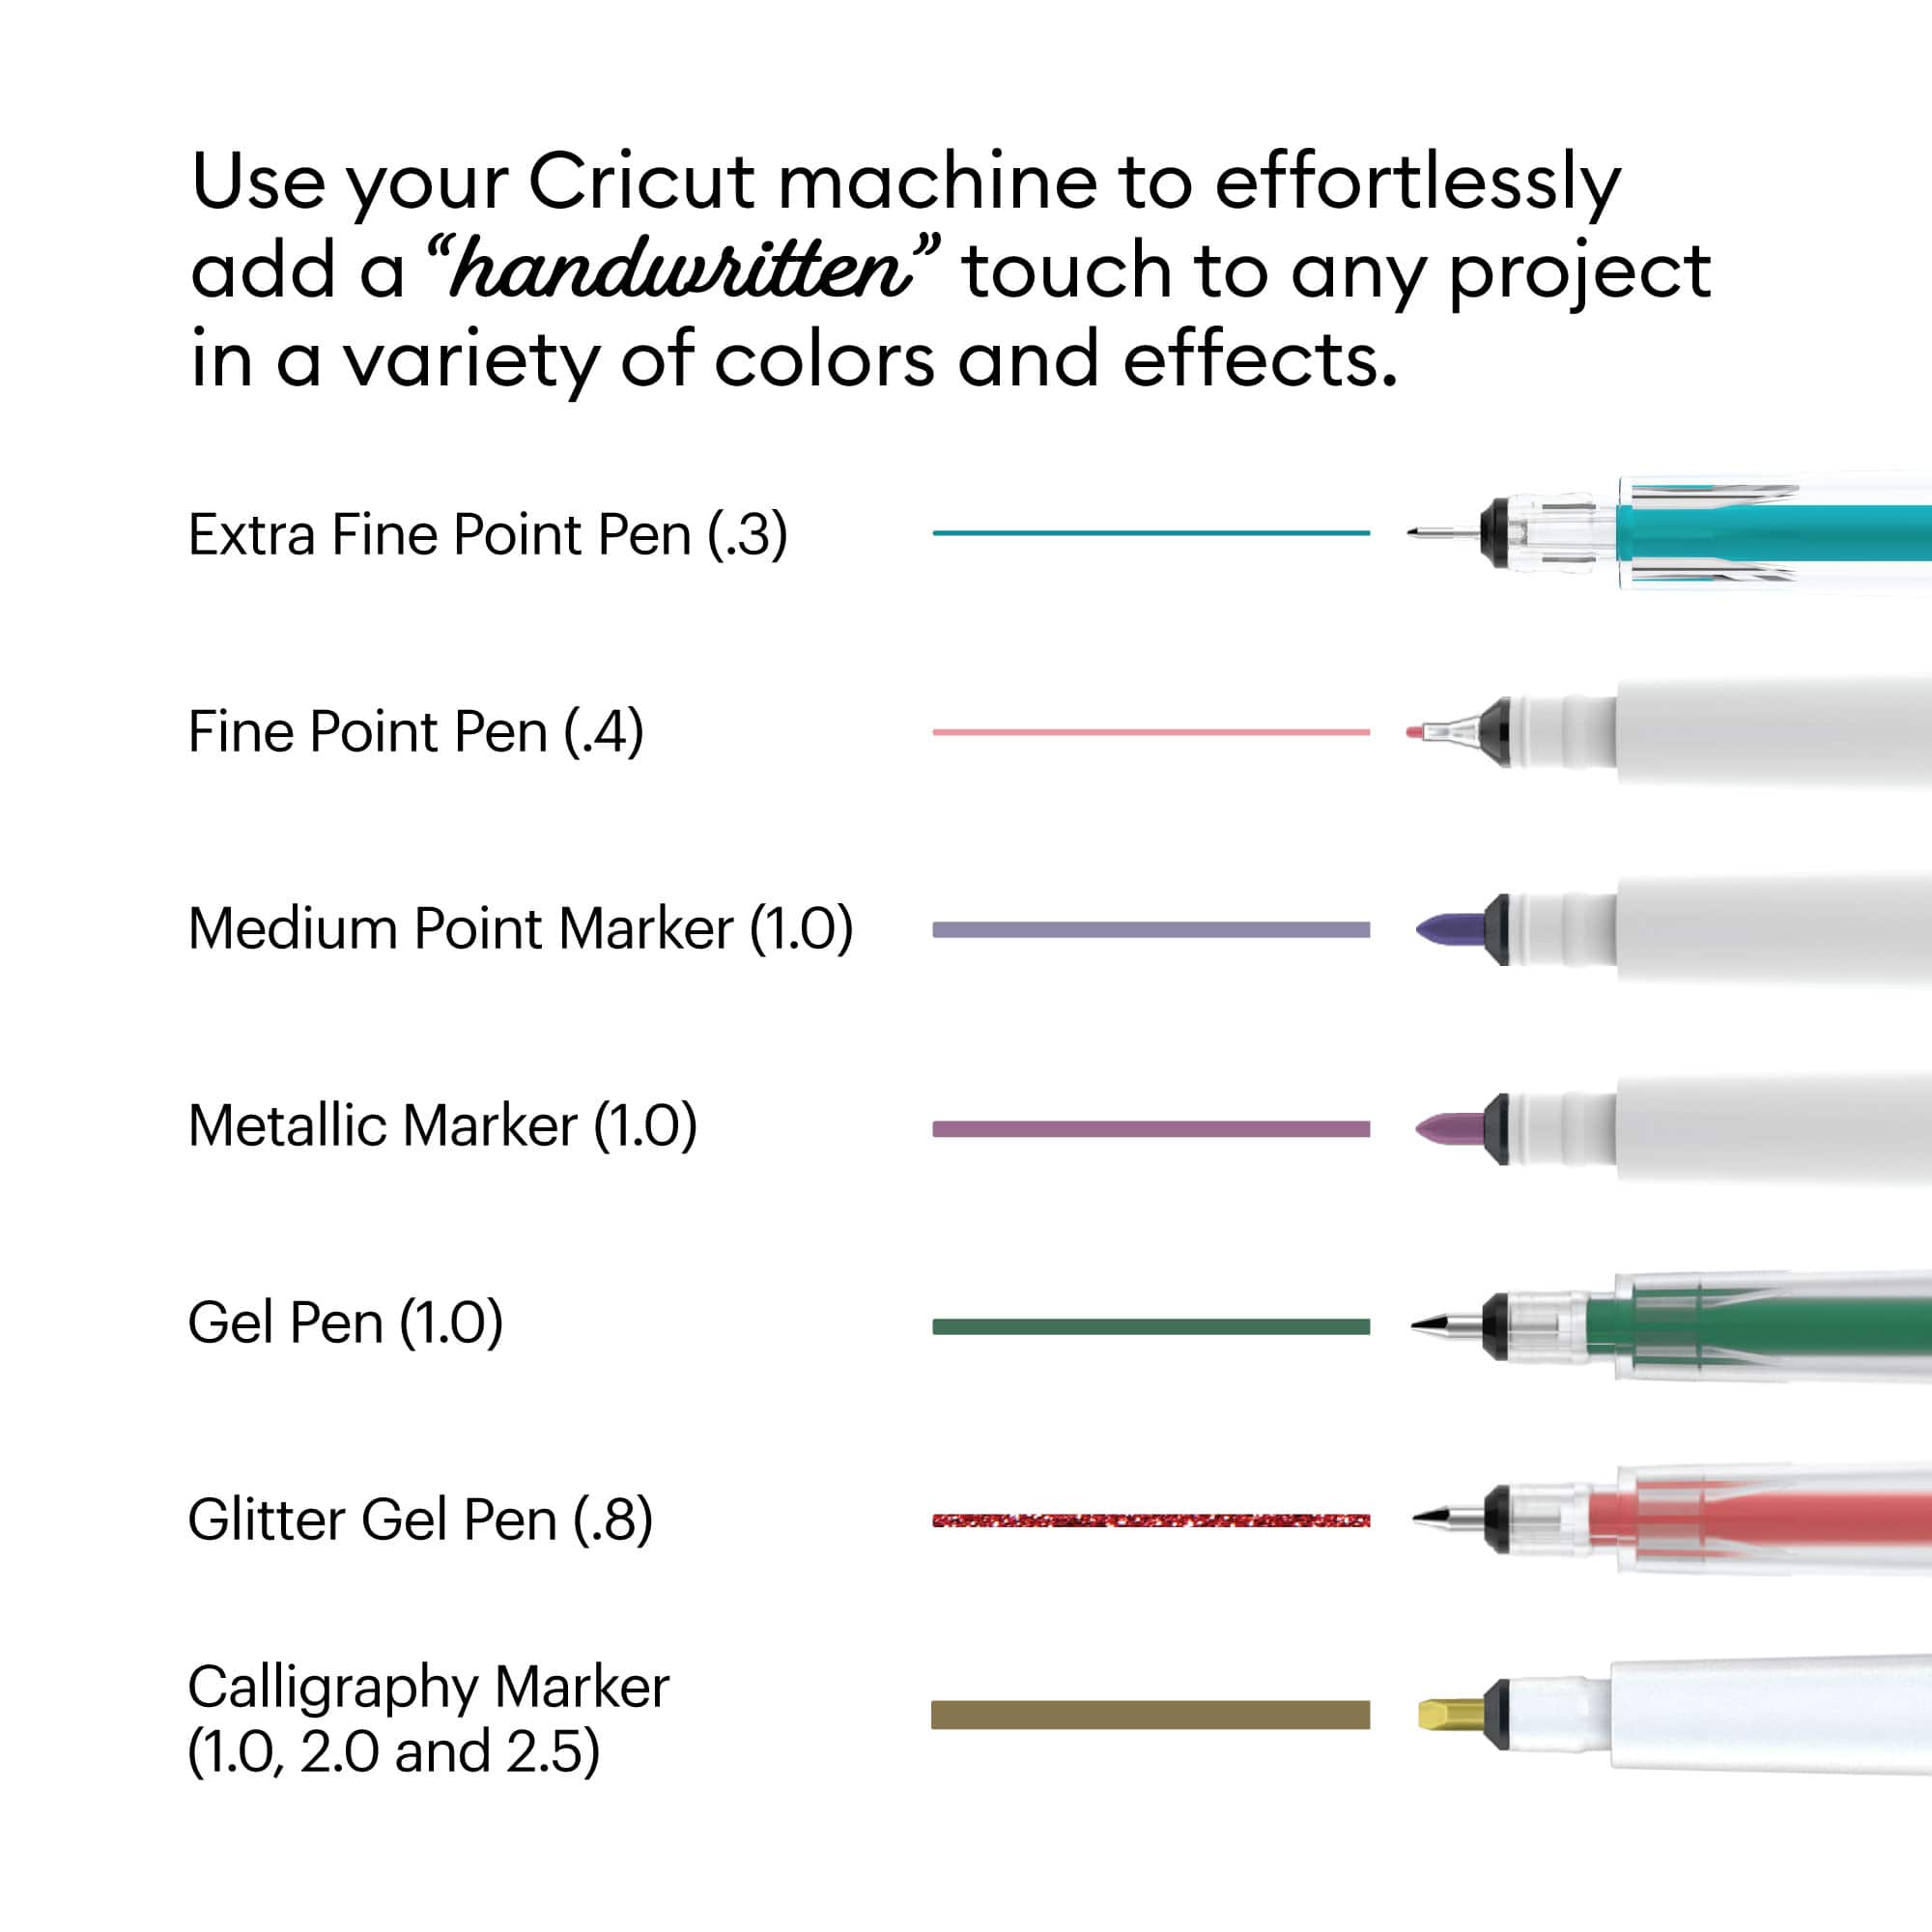 6 Packs: 30 ct. (180 total) Cricut&#xAE; Ultimate Fine Point Pen Set